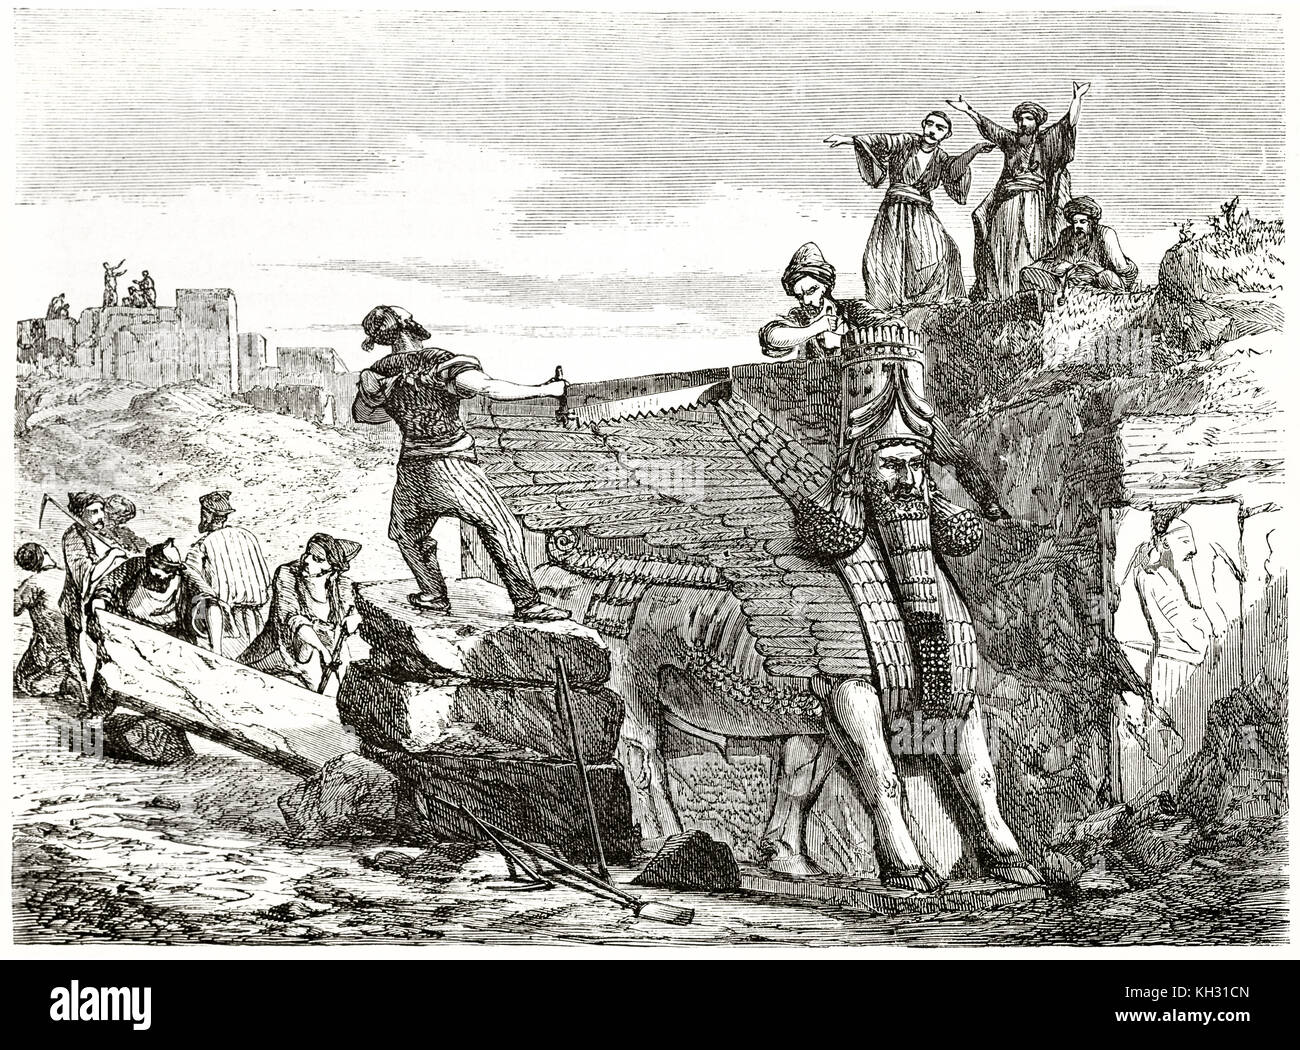 Vecchia immagine raffigurante Lamassu scavo in Mesopotamia. Da Flandin, publ. in Le Tour du Monde, Parigi, 1863 Foto Stock